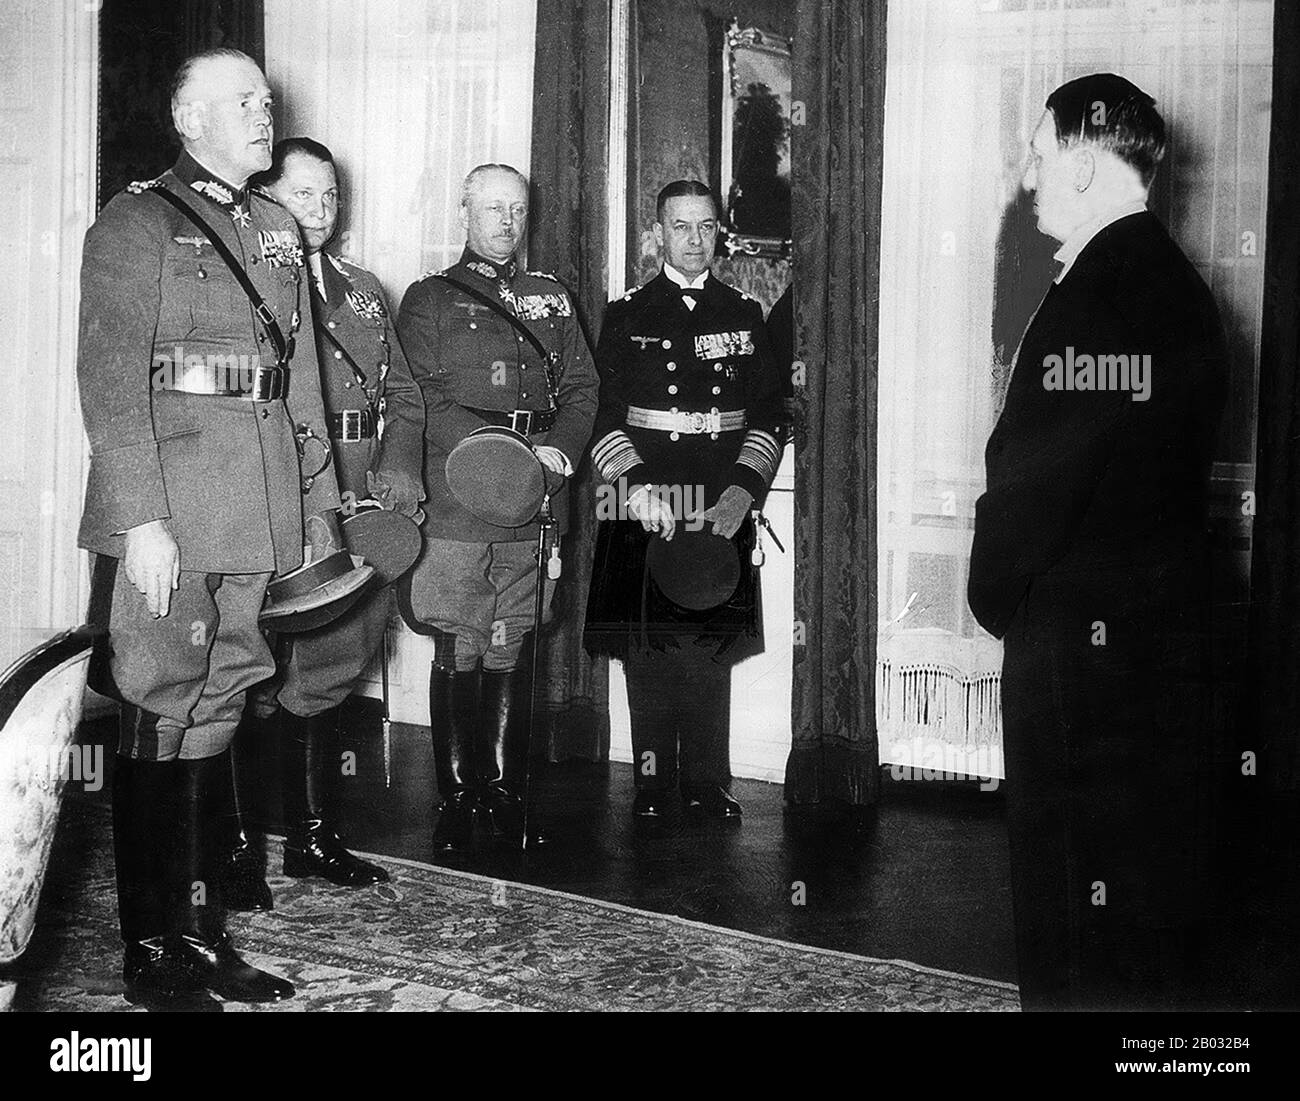 Adolf Hitler (Führer und Reichskanzler) a officiellement reçu les félicitations des responsables de l'armée lors de la célébration de la nouvelle année qui s'est tenue à Berlin, la nuit du 31 décembre 1935-1 janvier 1936. De gauche à droite : le Generaloberst Werner von Blomberg (Reichskriegsministre und Oberbefehlshaber der Wehrmacht), le général der Flieger Hermann Göring (Oberbehlshaber der Luftwaffe), le général der Artillerie Werner Freiherr von Fritsch (Oberbefehlshaber des Heberes), l'amiral Rahleger et l'amiral Rahleger (Oberbeegerer. Banque D'Images